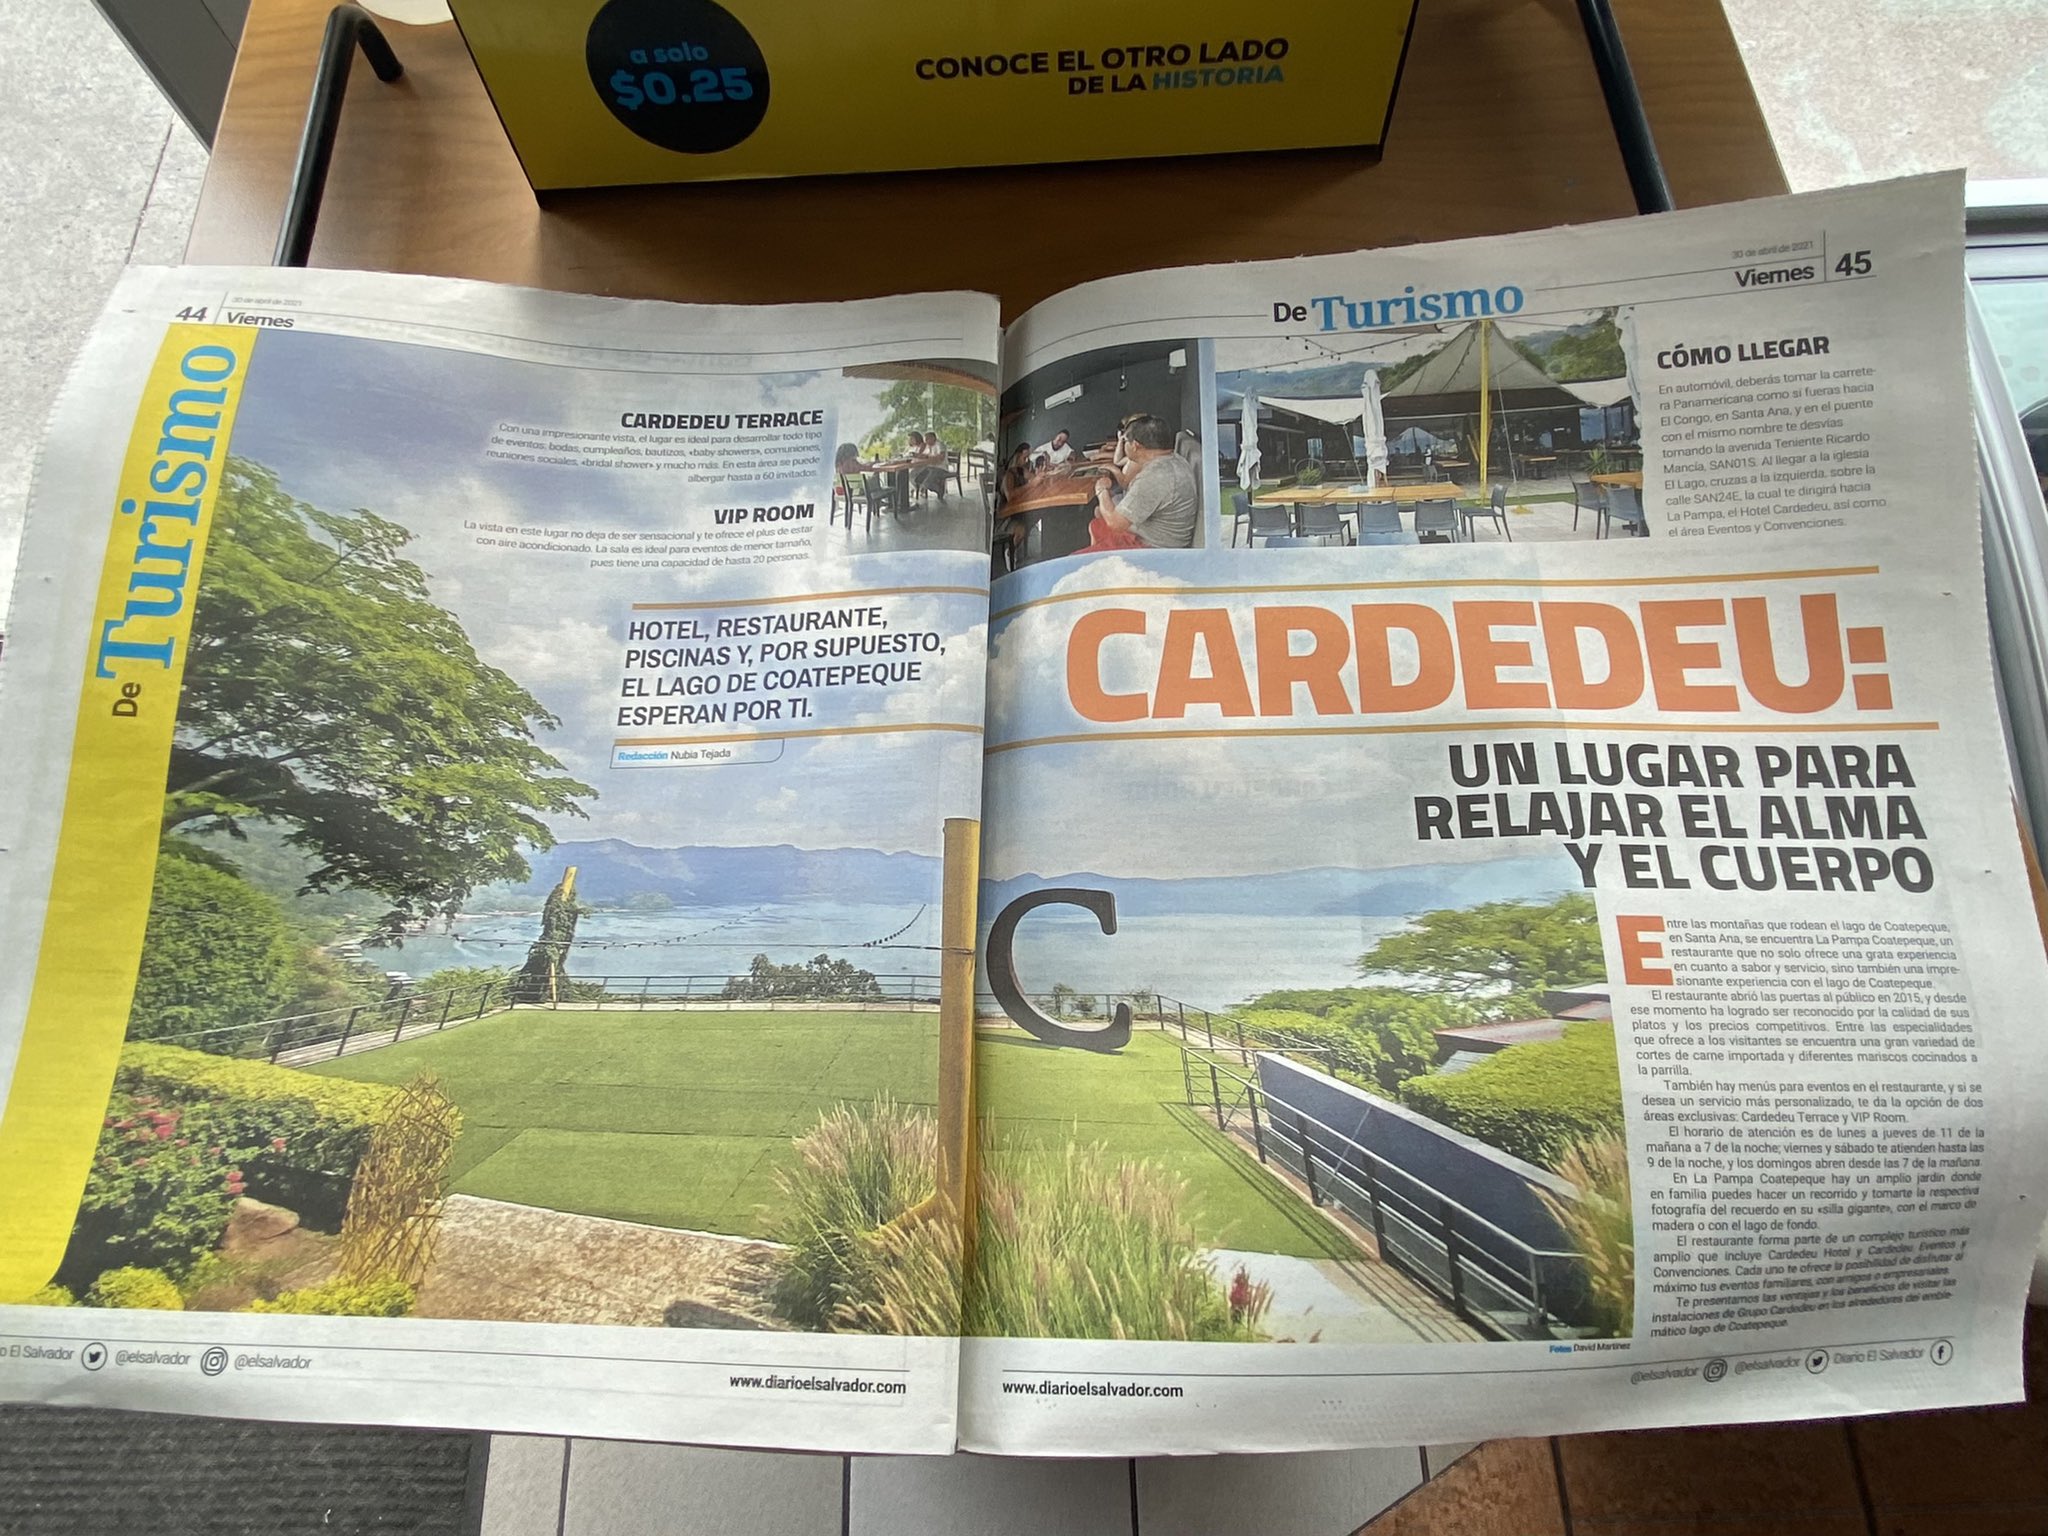 El 30 de abril el oficialista Diario El Salvador inició una serie de publicaciones impresas y digitales de reportajes turísticos para promover los negocios de Cardedeu en el lago de Coatepeque. Foto: cortesía.